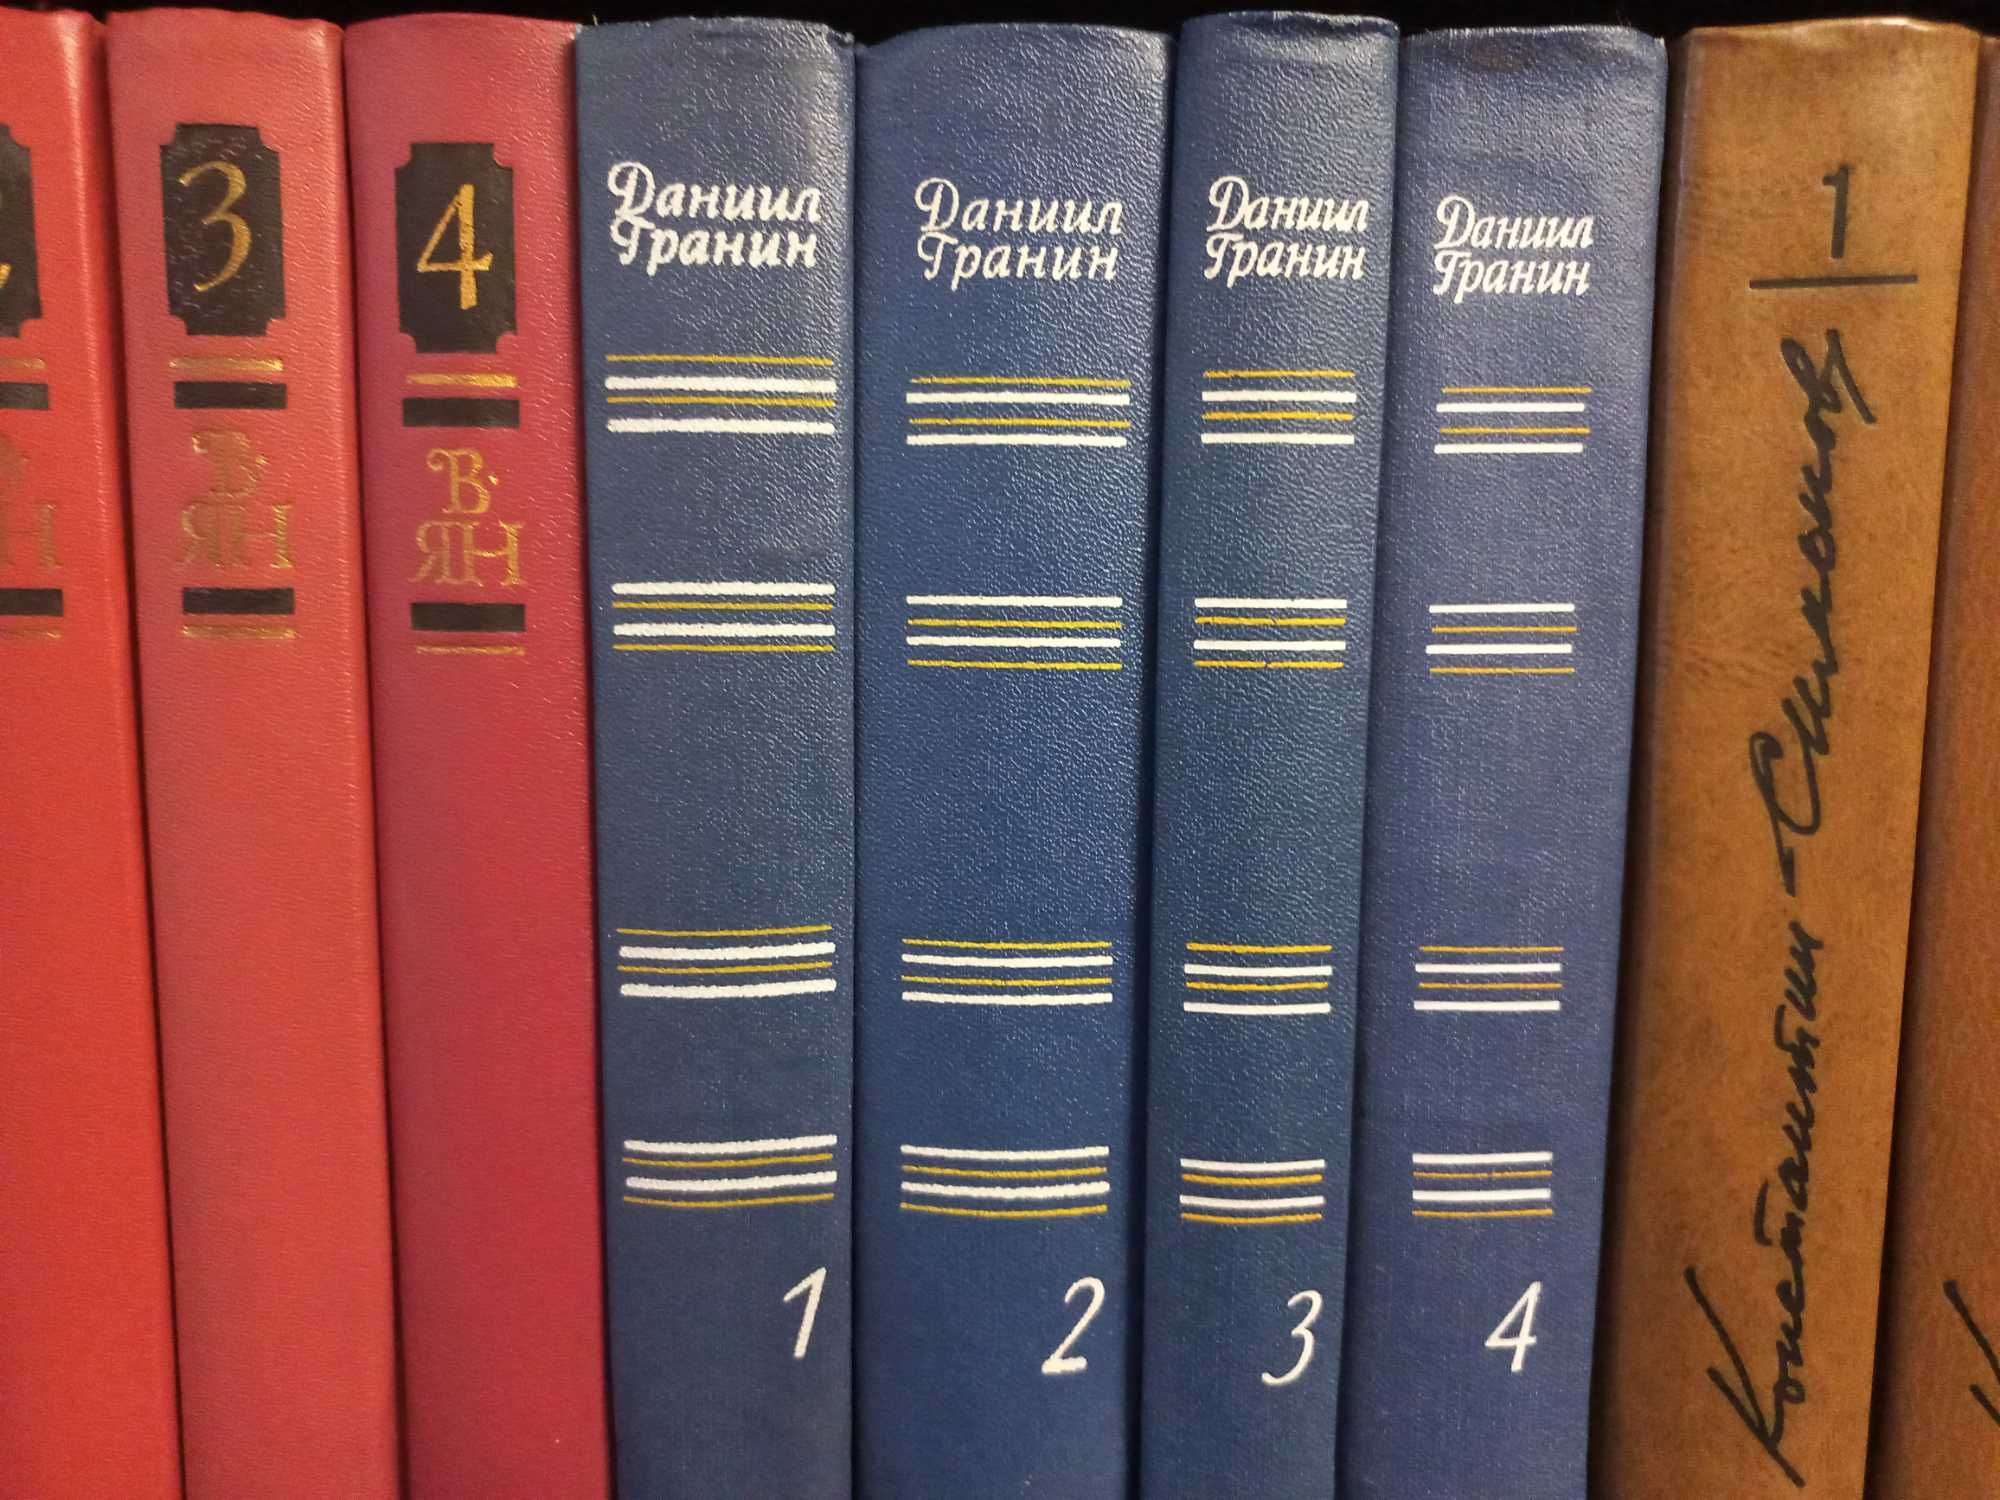 Собрание сочинений Даниила Гранина в 4 томах